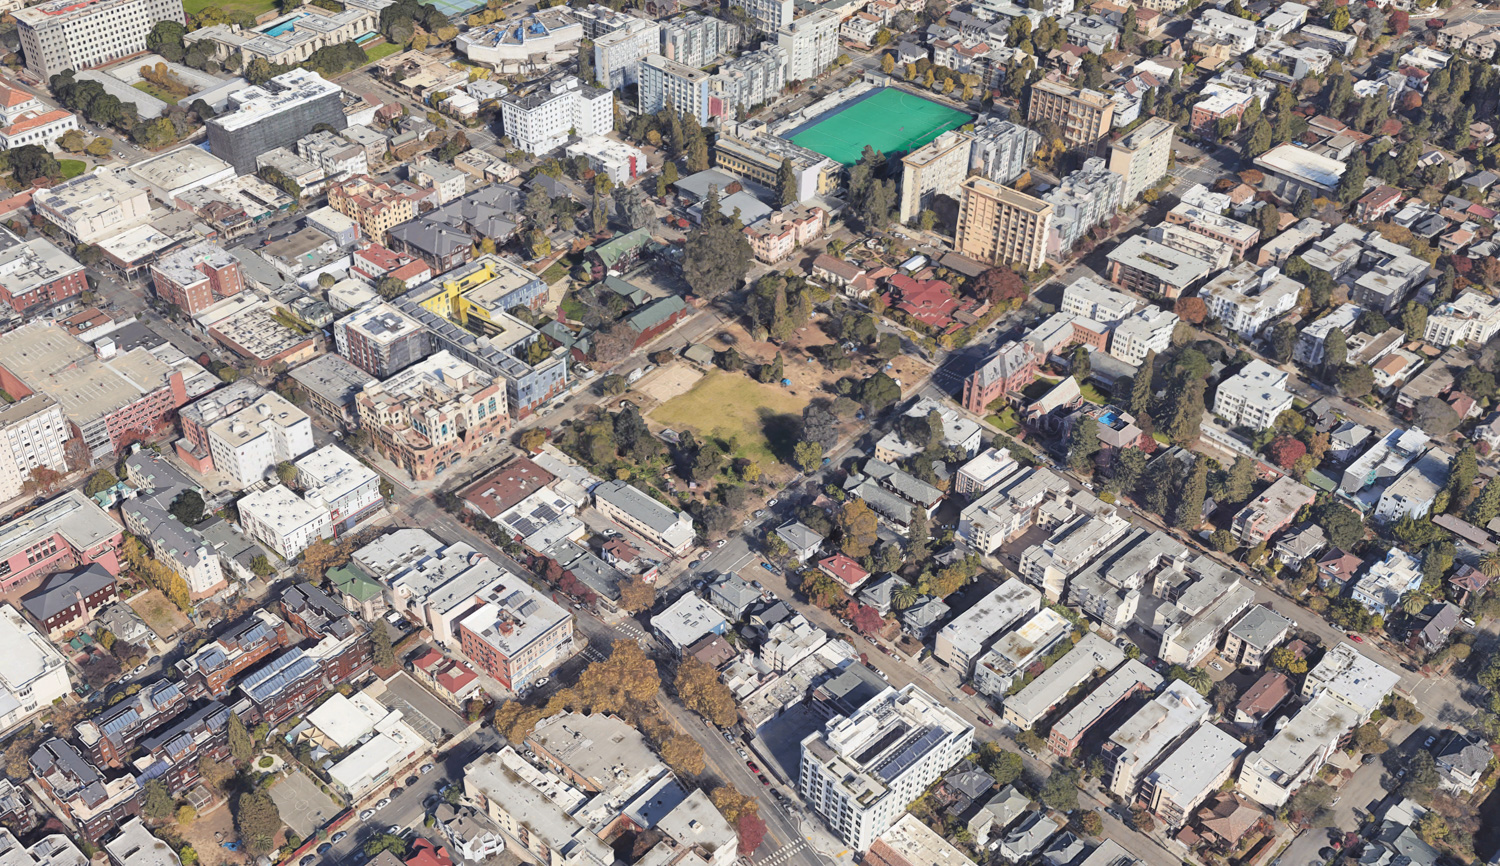 People's Park, image via Google Satellite